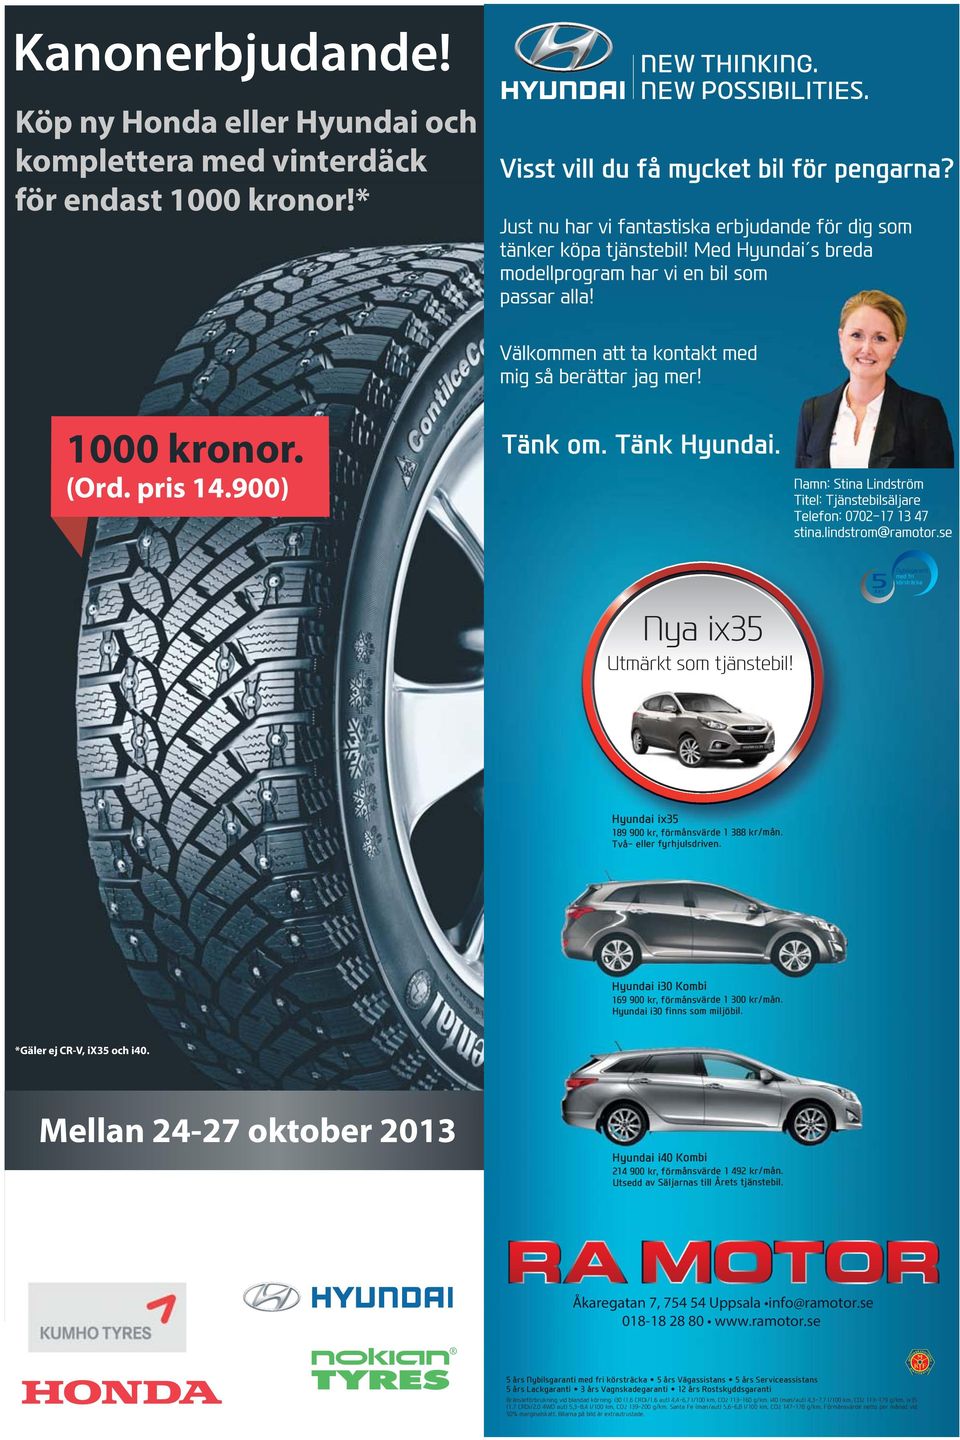 Mellan 24-27 oktober 2013 Hyundai i40 Kombi 214 900 kr, förmånsvärde 1 492 kr/mån. Utsedd av Säljarnas till Årets tjänstebil. Åkaregatan 7, 754 54 Uppsala info@ramotor.